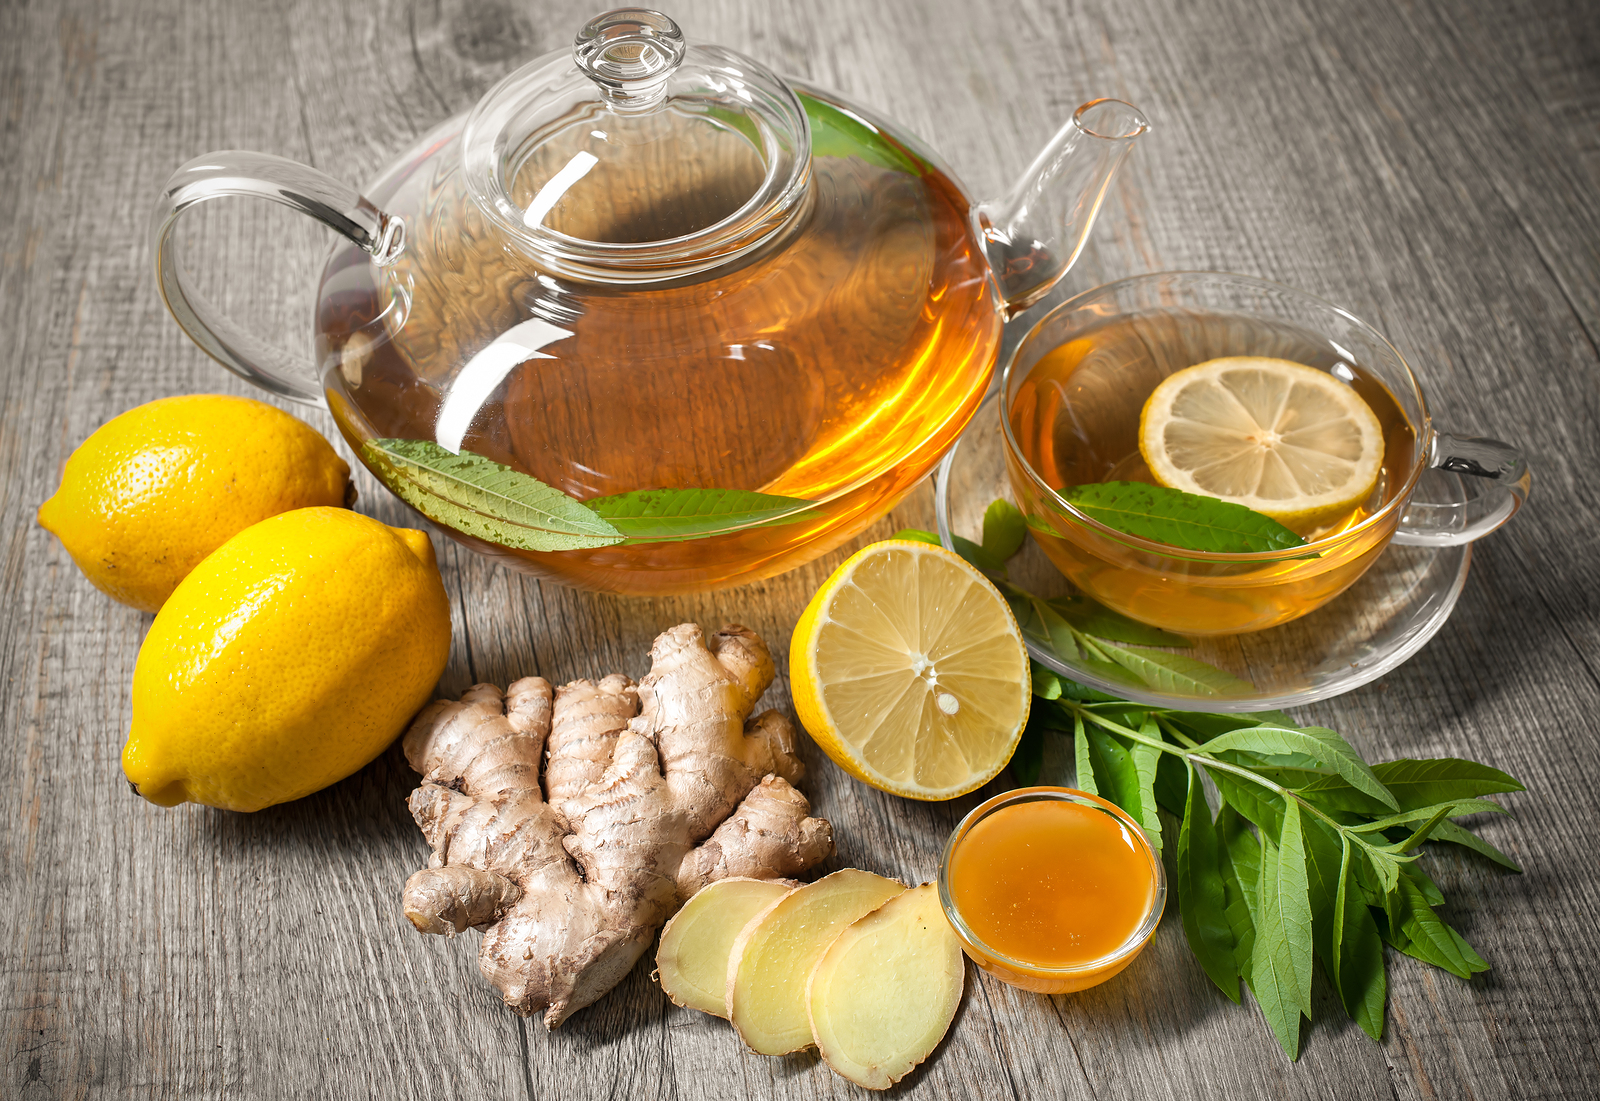 Лимон, имбирь и гвоздика действуют как натуральные и безопасные средства против коронавируса.